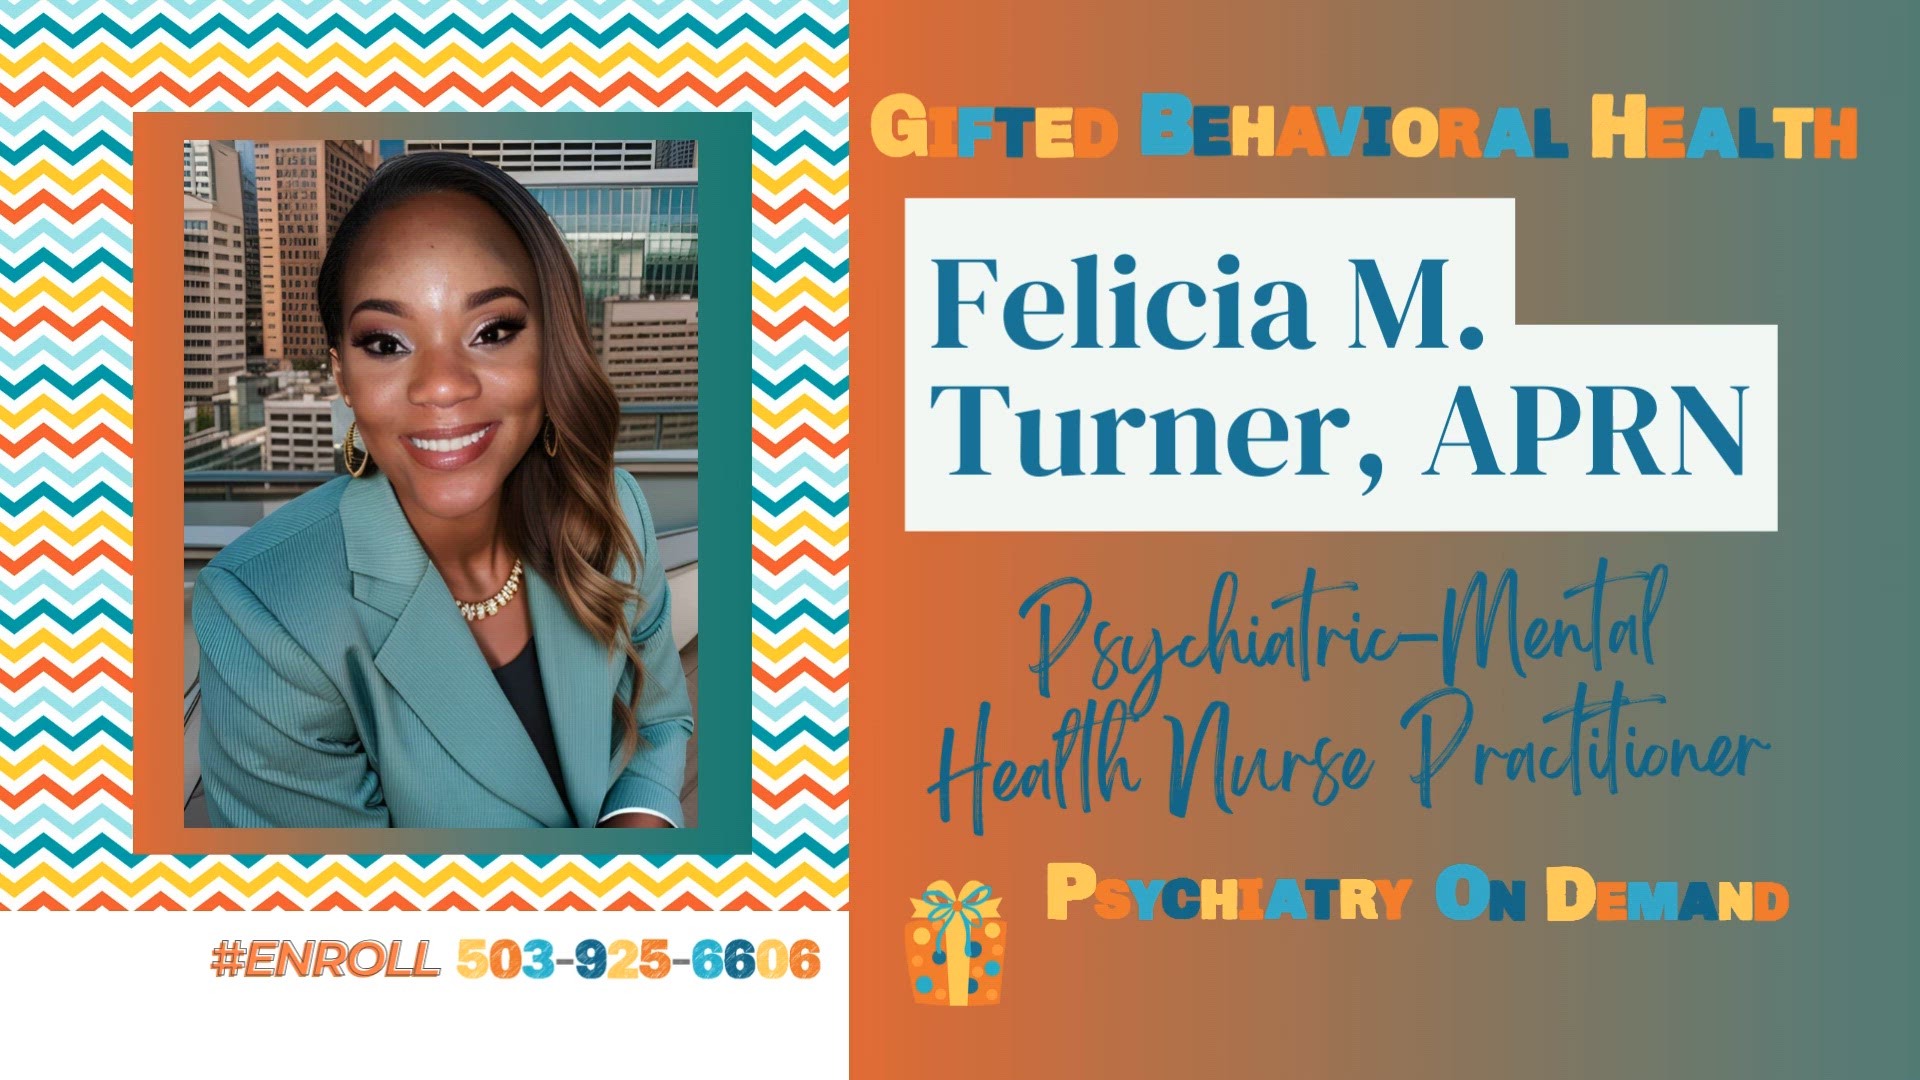 Felicia Turner, APRN | Text #Enroll 503-925-6606